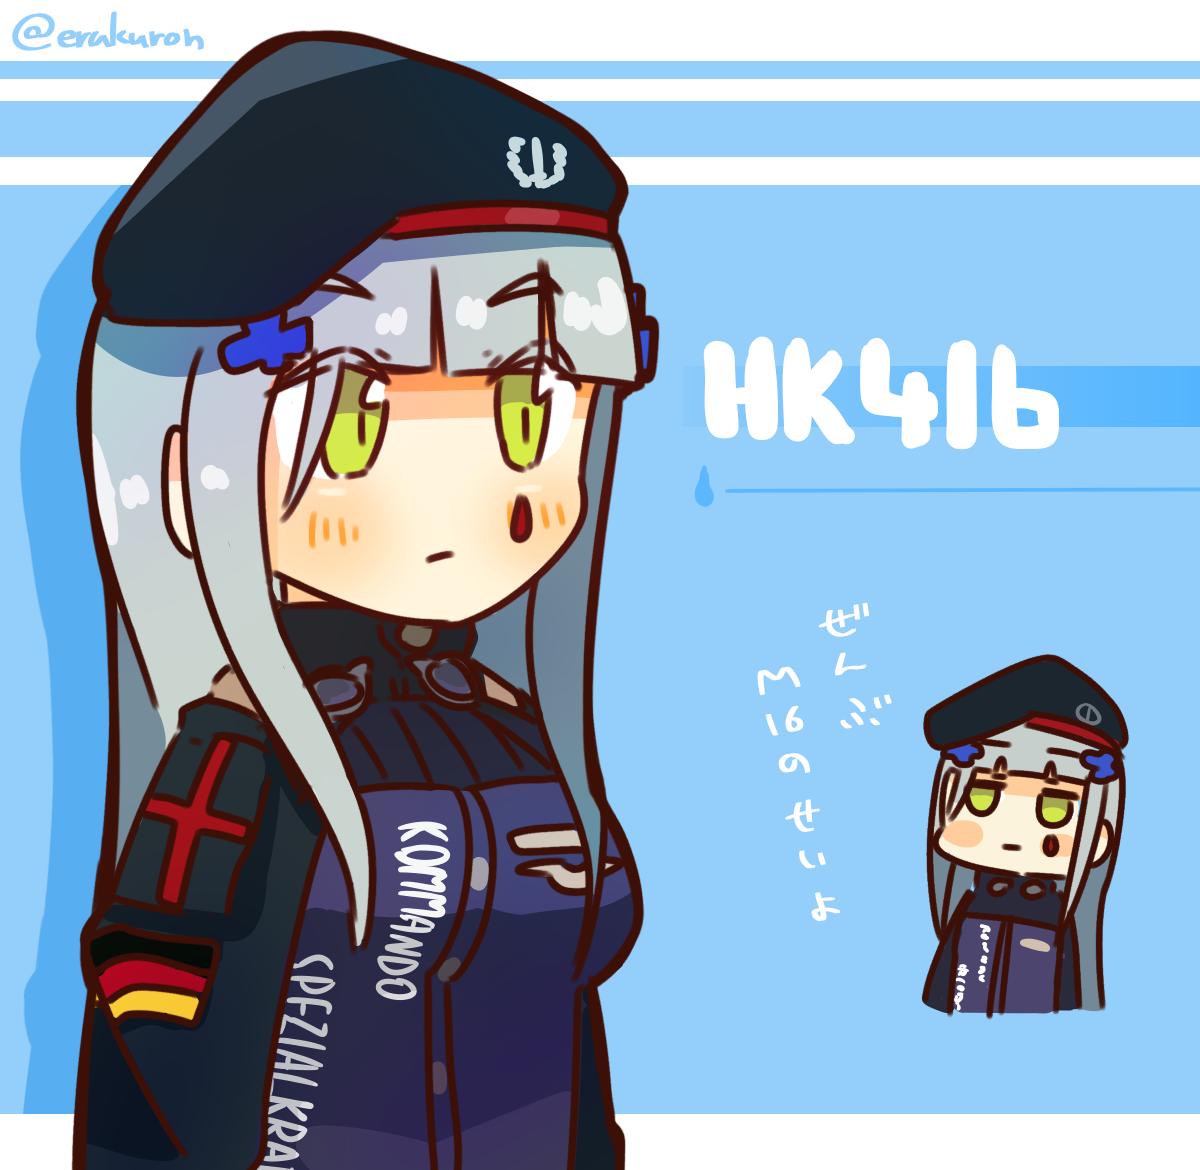 HK416(少女前線|ドルフロ) 「H K 4 1 6 」|Lcronのイラスト